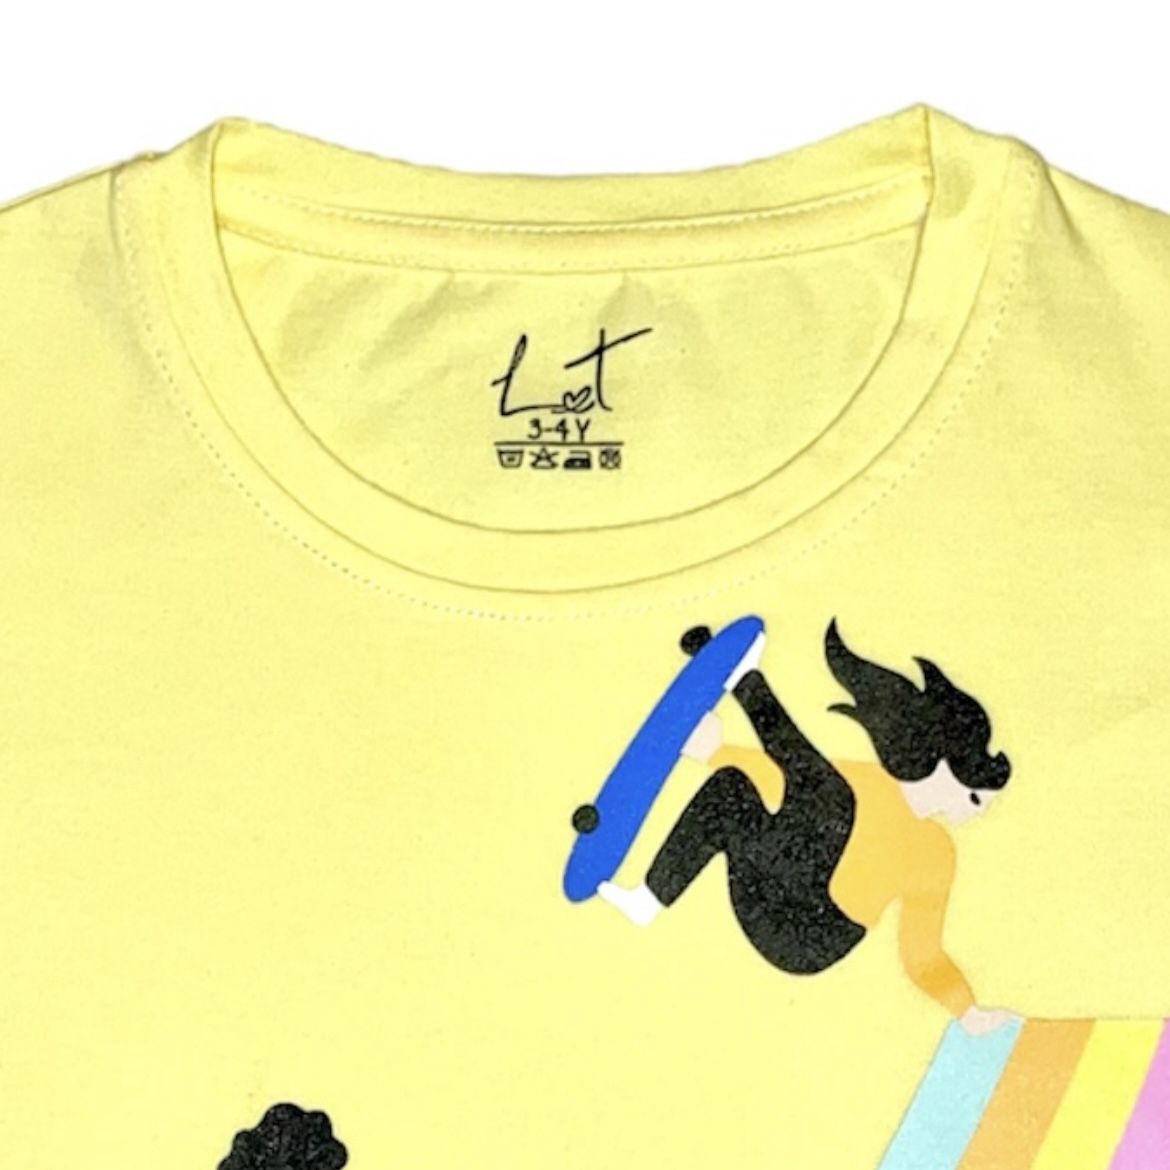 تی شرت آستین کوتاه بچگانه لینتل مدل  رنگین کمان کد 0064 رنگ زرد -  - 2